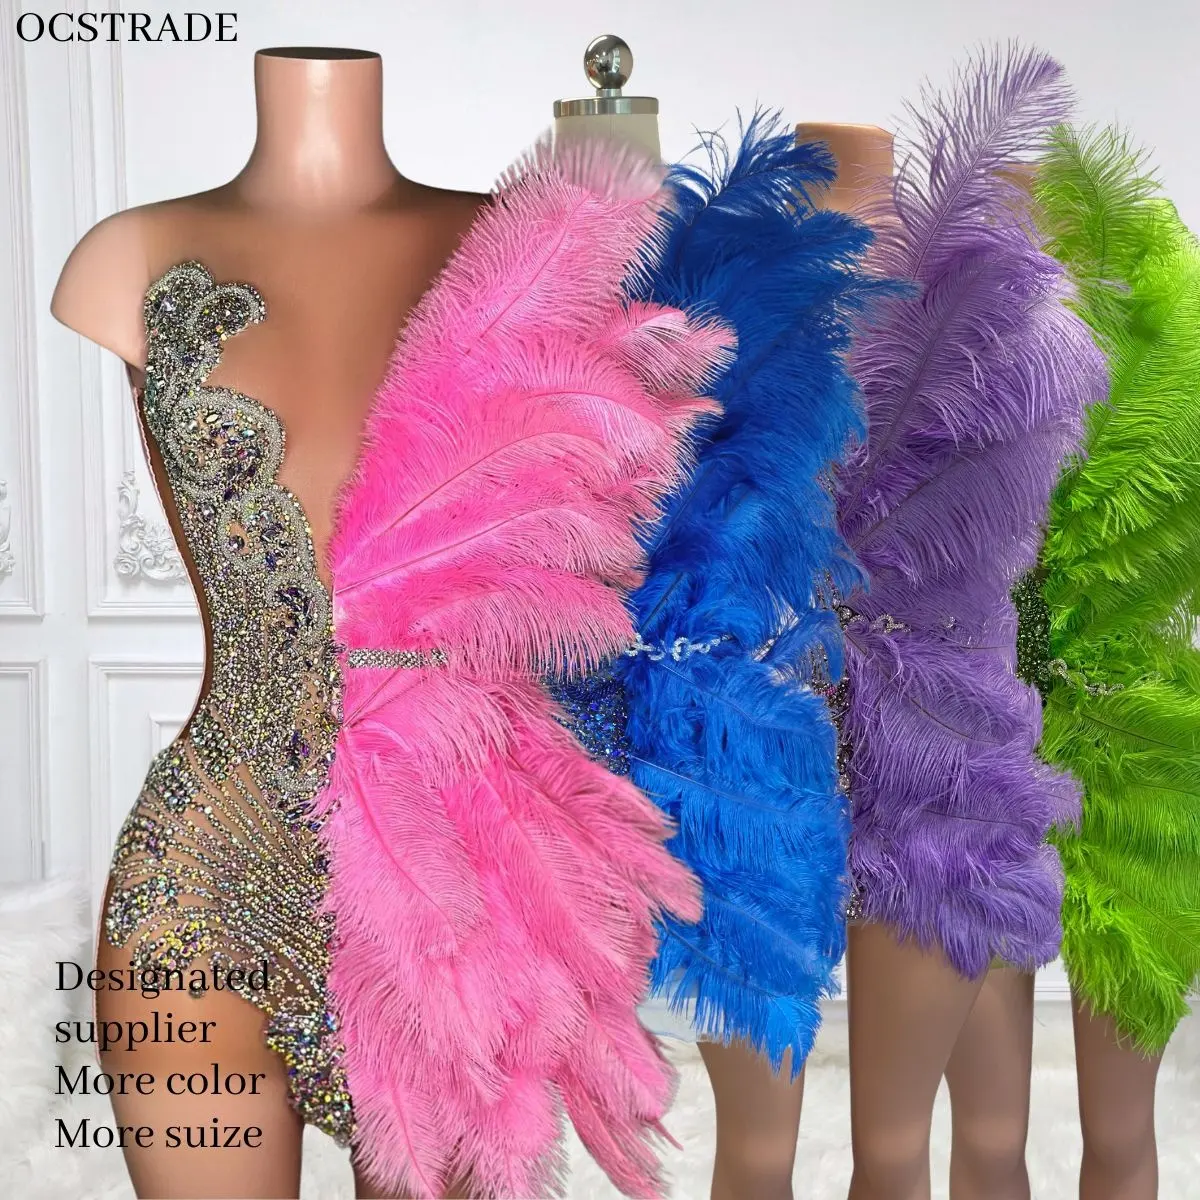 Ocstrade Robe rose vif avec plumes et paillettes de diamants Robe de soirée Club Robe de soirée pour femmes Performance Wear Ballroom